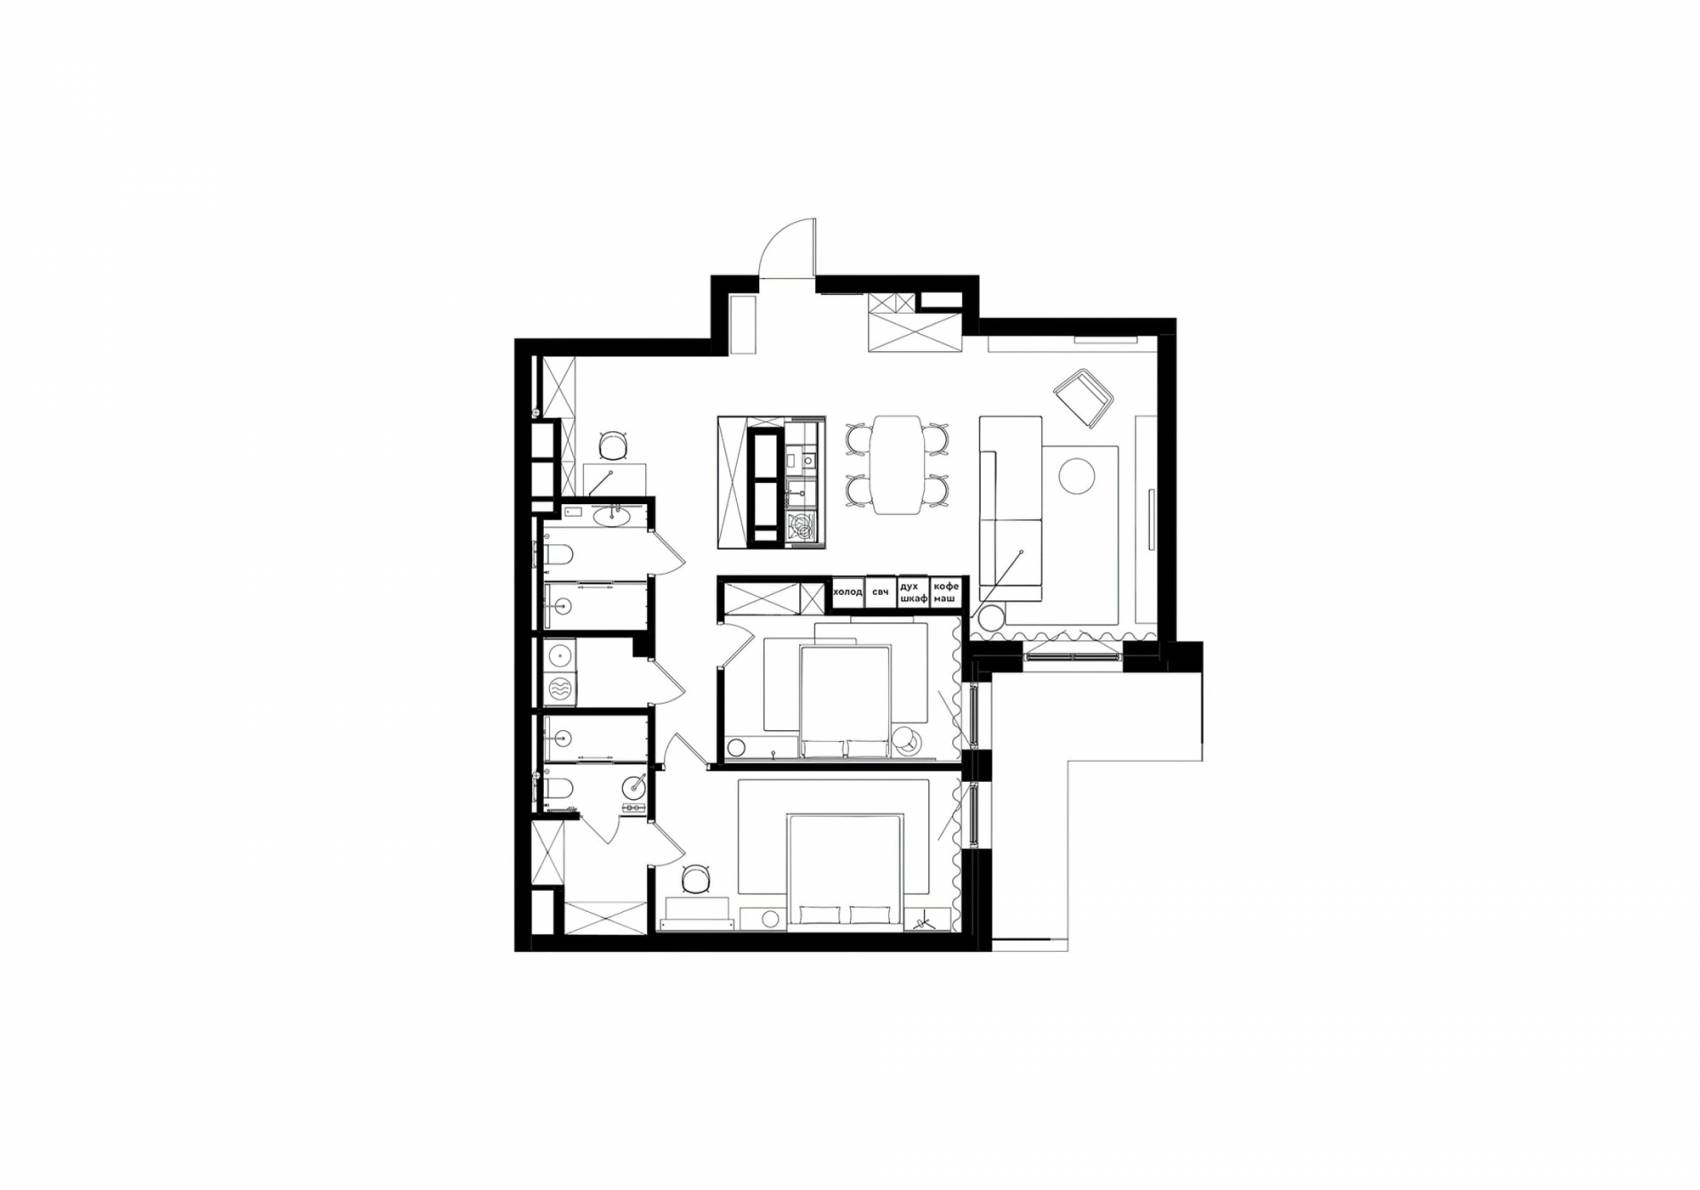 公寓设计,公寓设计案例,爱沙尼亚,120㎡,DA bureau,公寓设计案例,公寓装修,莫兰迪色系,最小宅,浅绿色